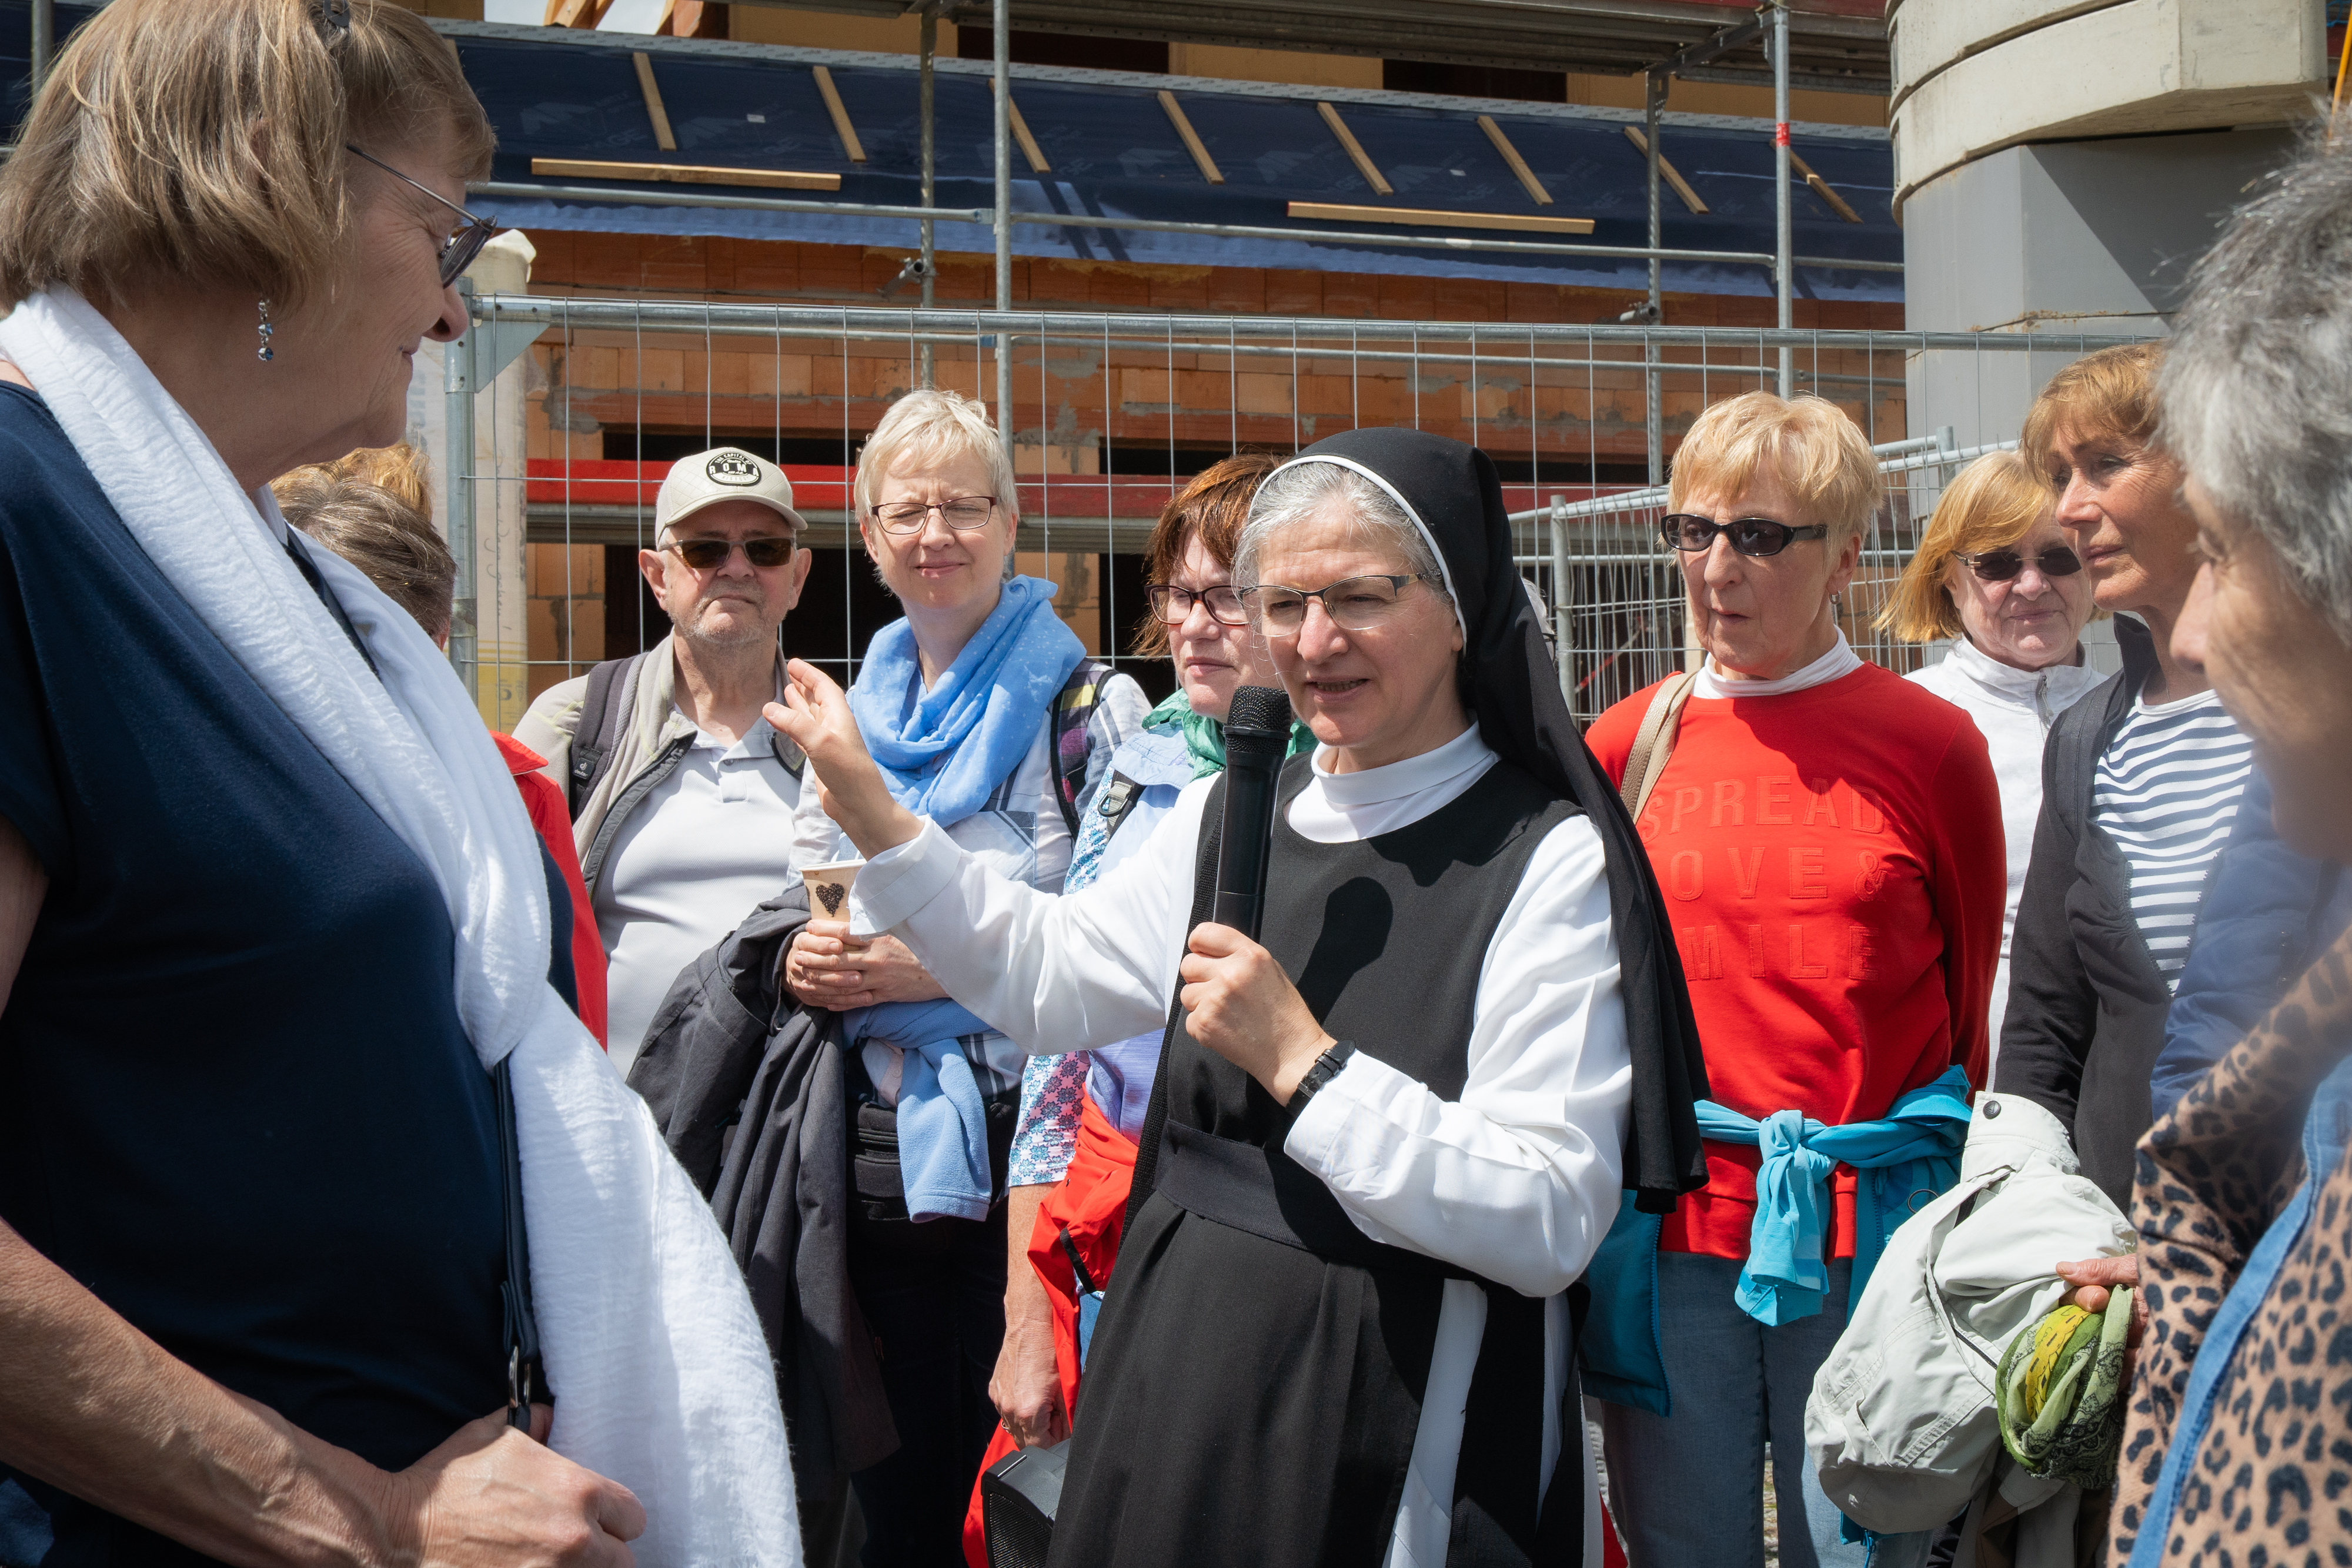 Eine Nonne redet mit Menschen